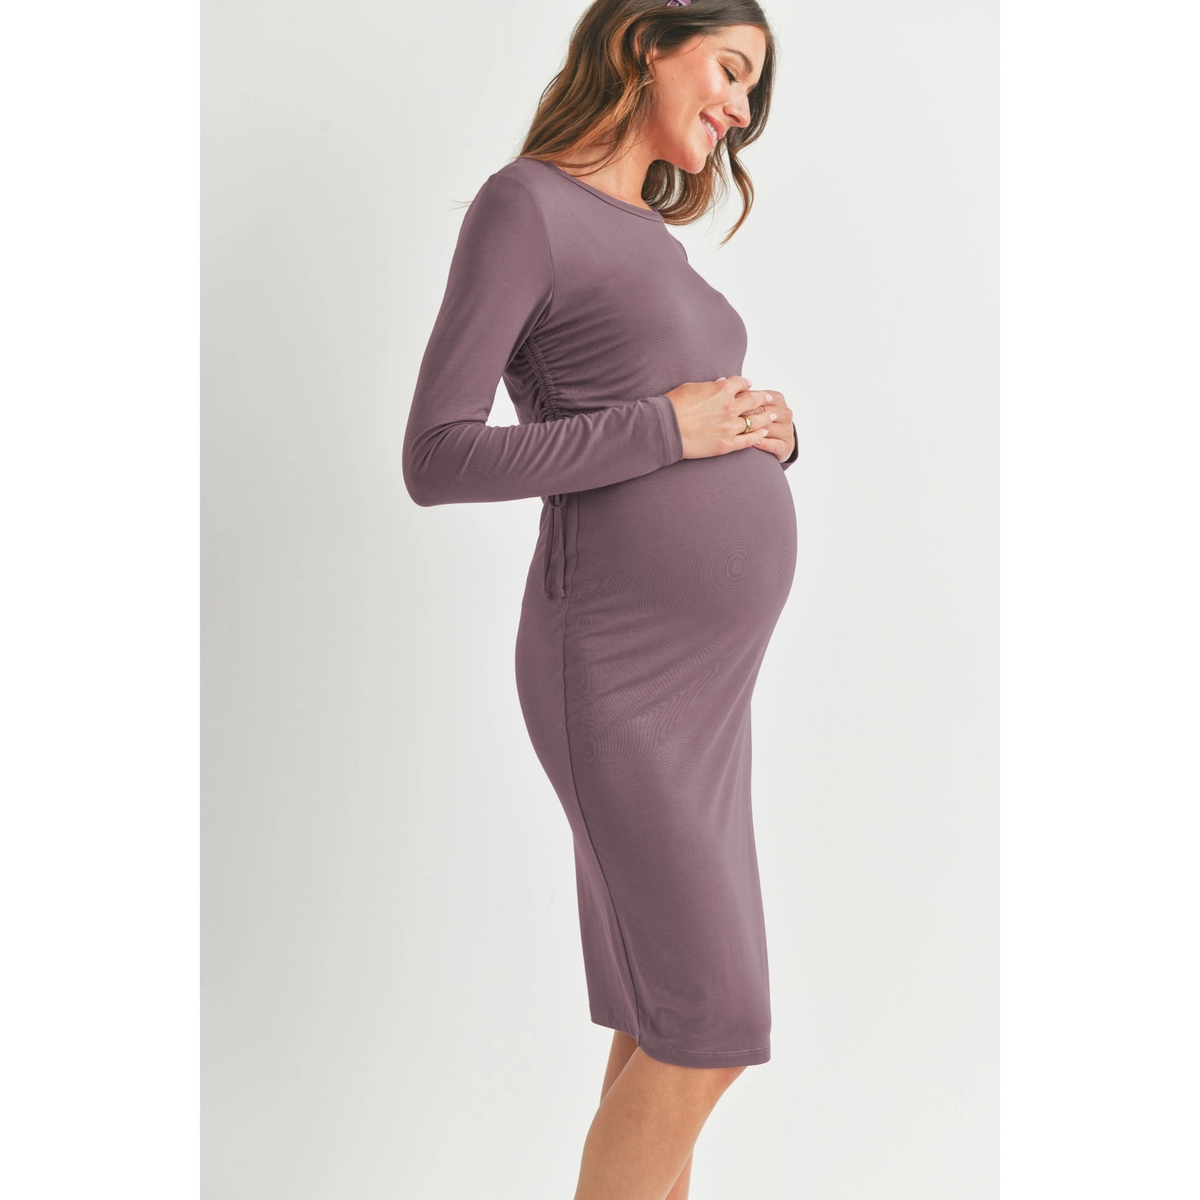 Mauve Modal Maternity Nursing Dress